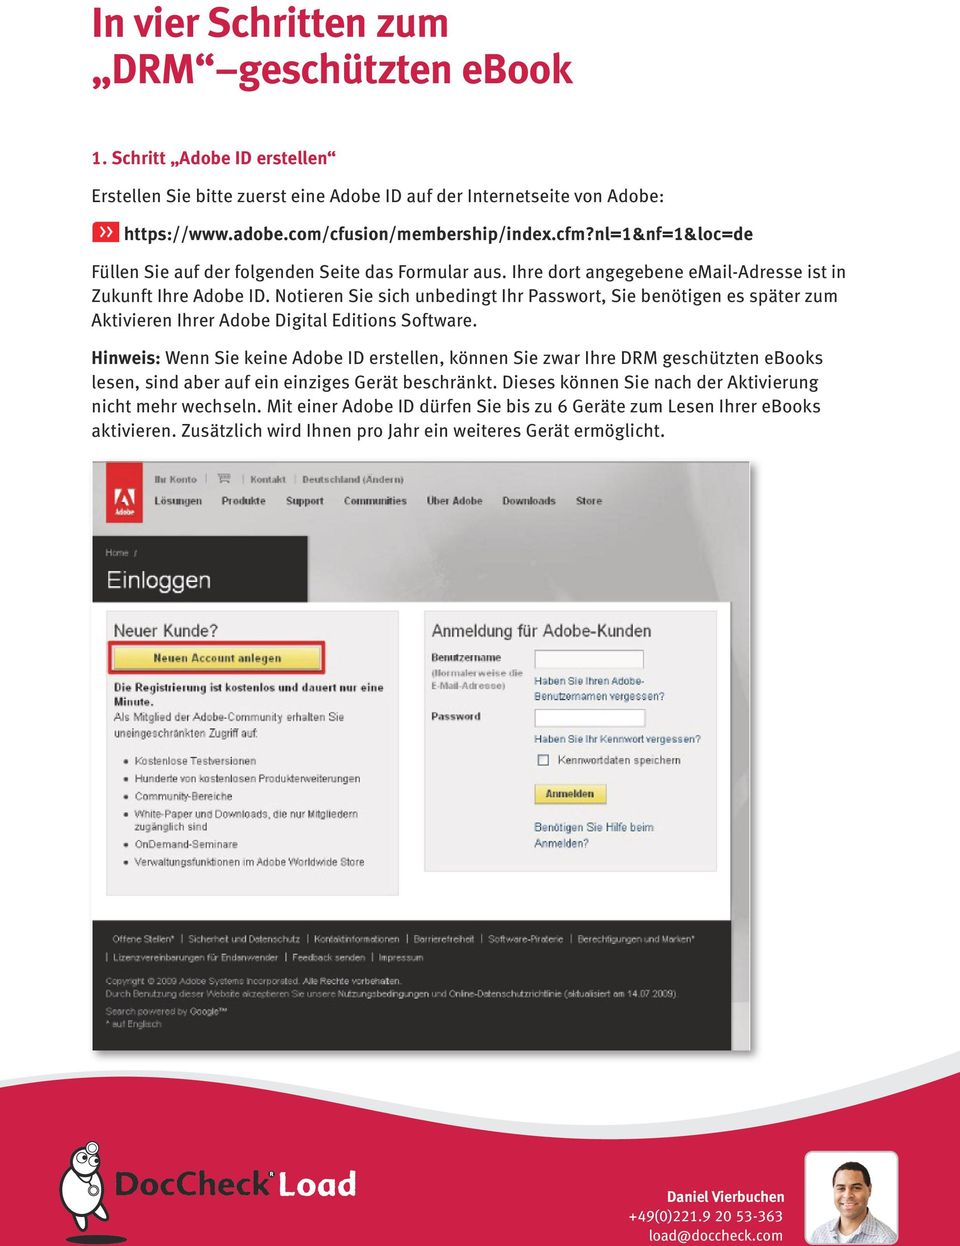 Notieren Sie sich unbedingt Ihr Passwort, Sie benötigen es später zum Aktivieren Ihrer Adobe Digital Editions Software.